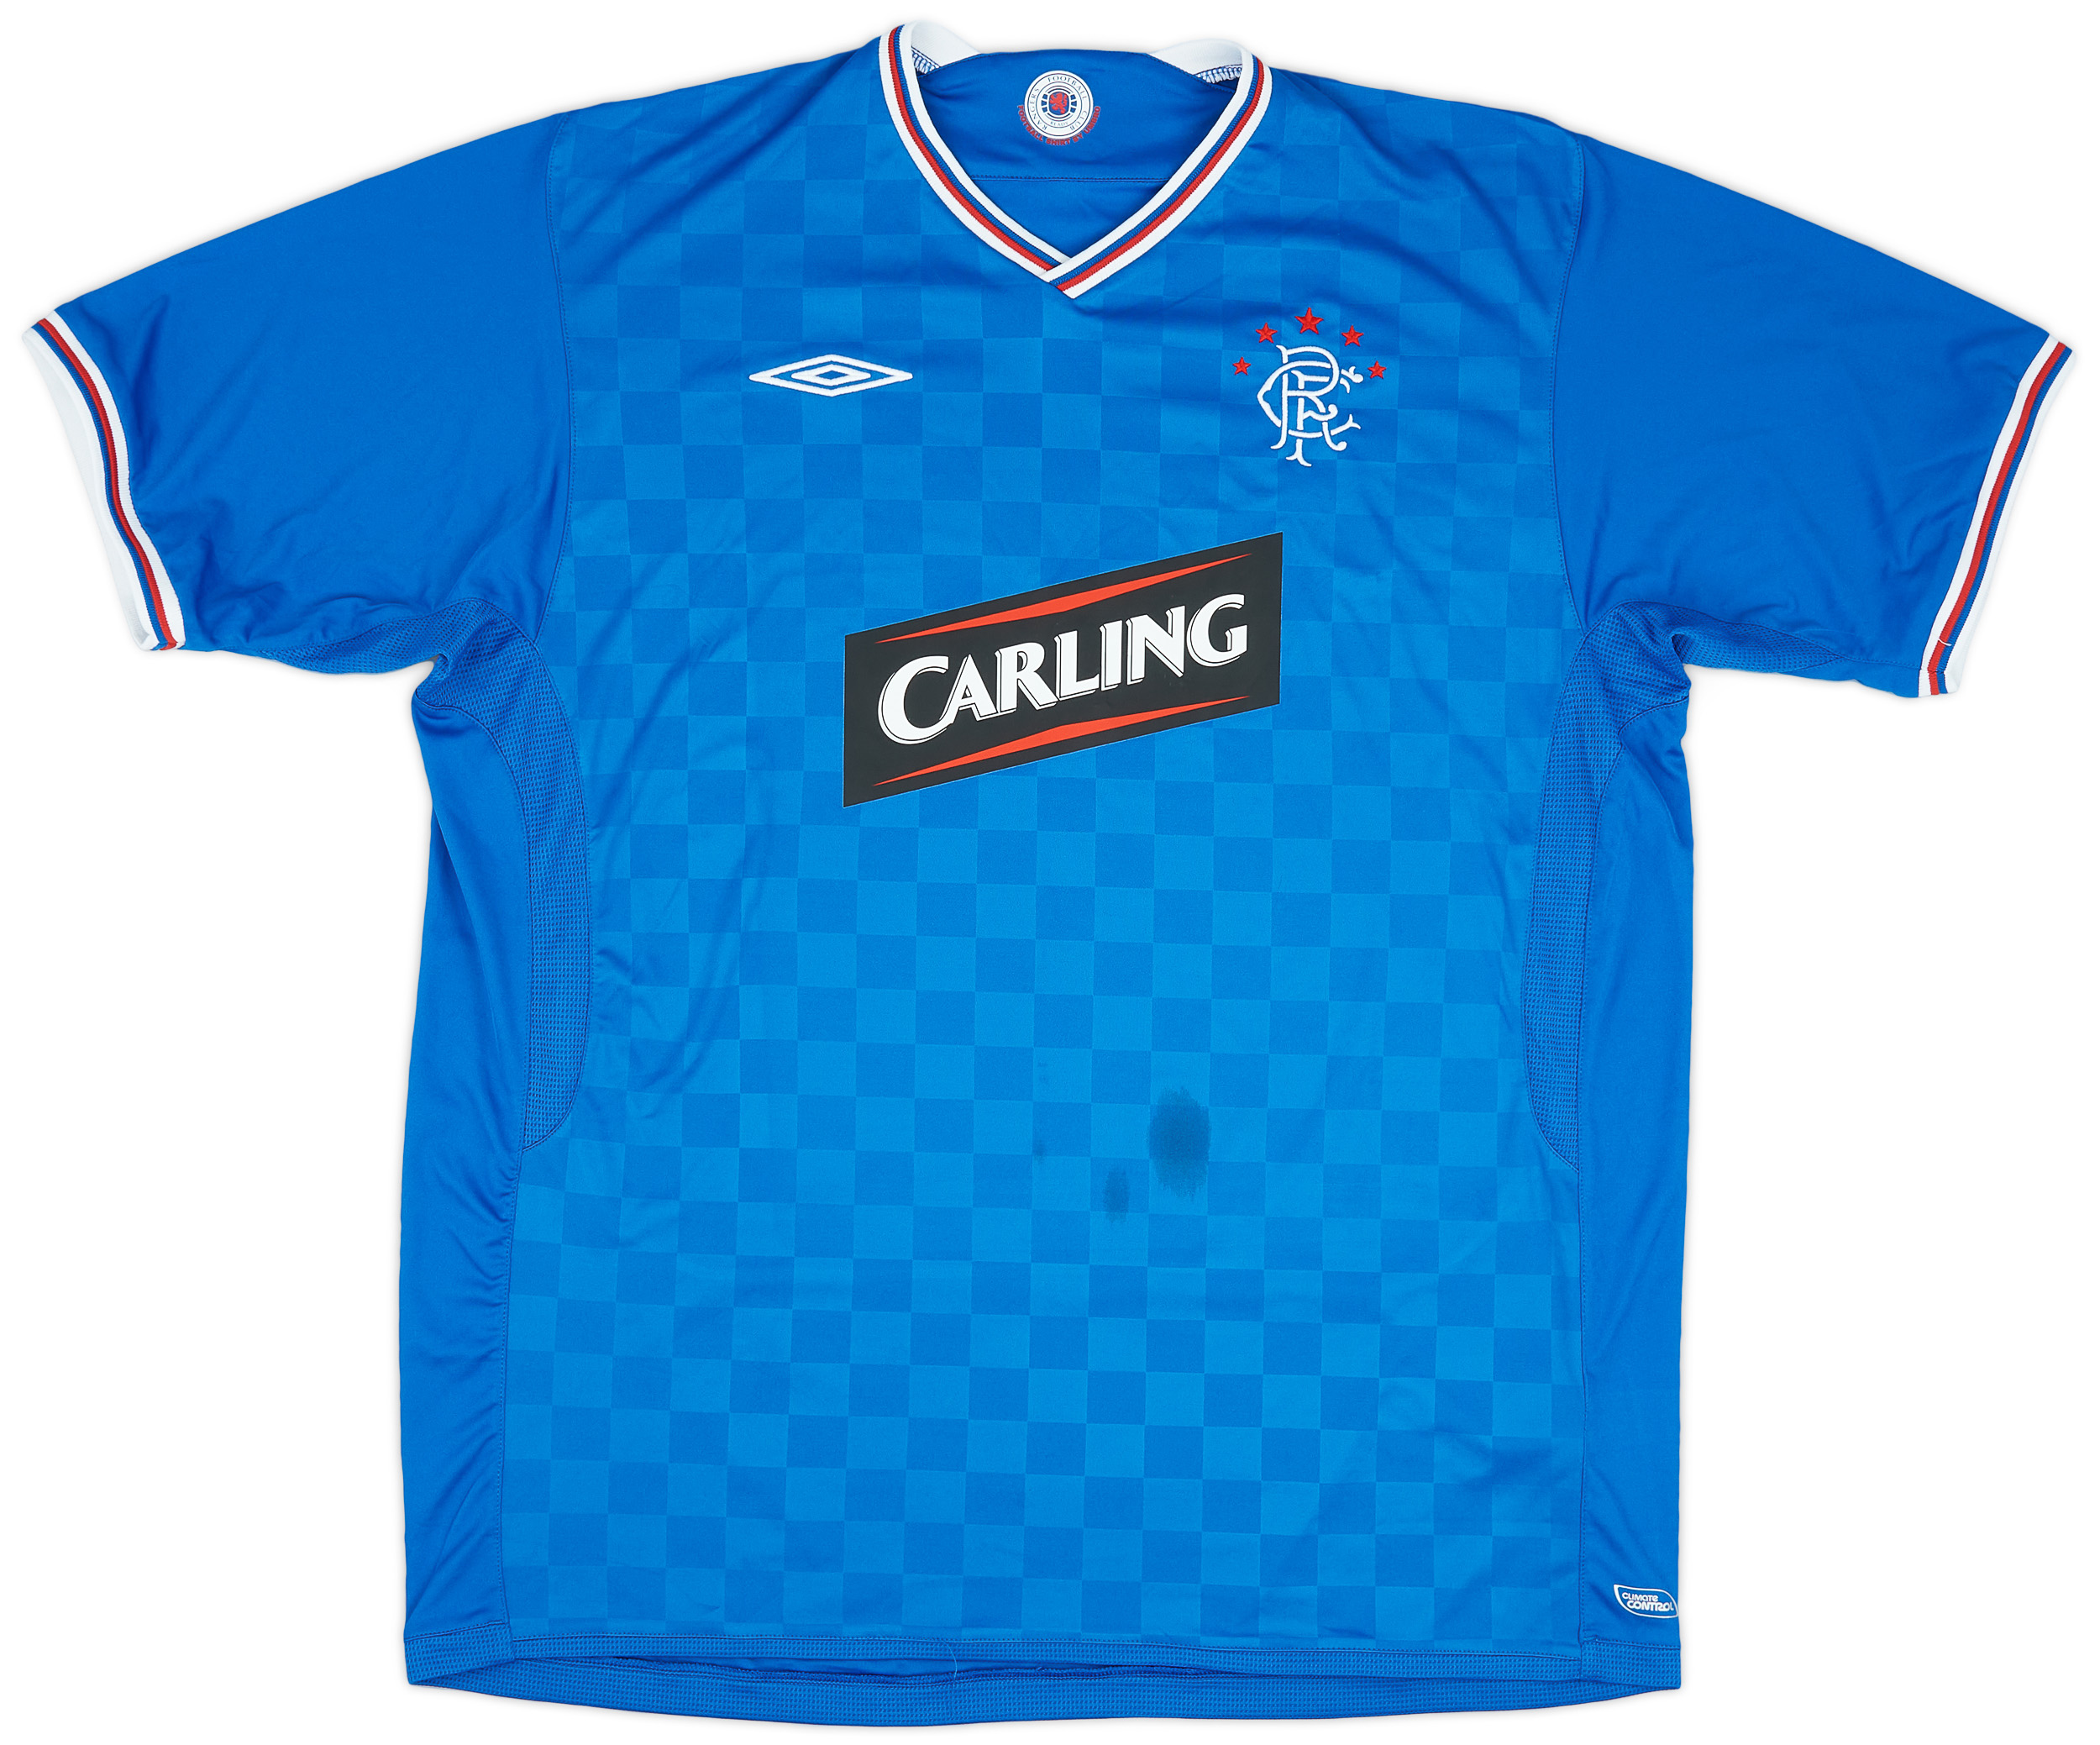 2009-10 Rangers Home Shirt - 5/10 - ()